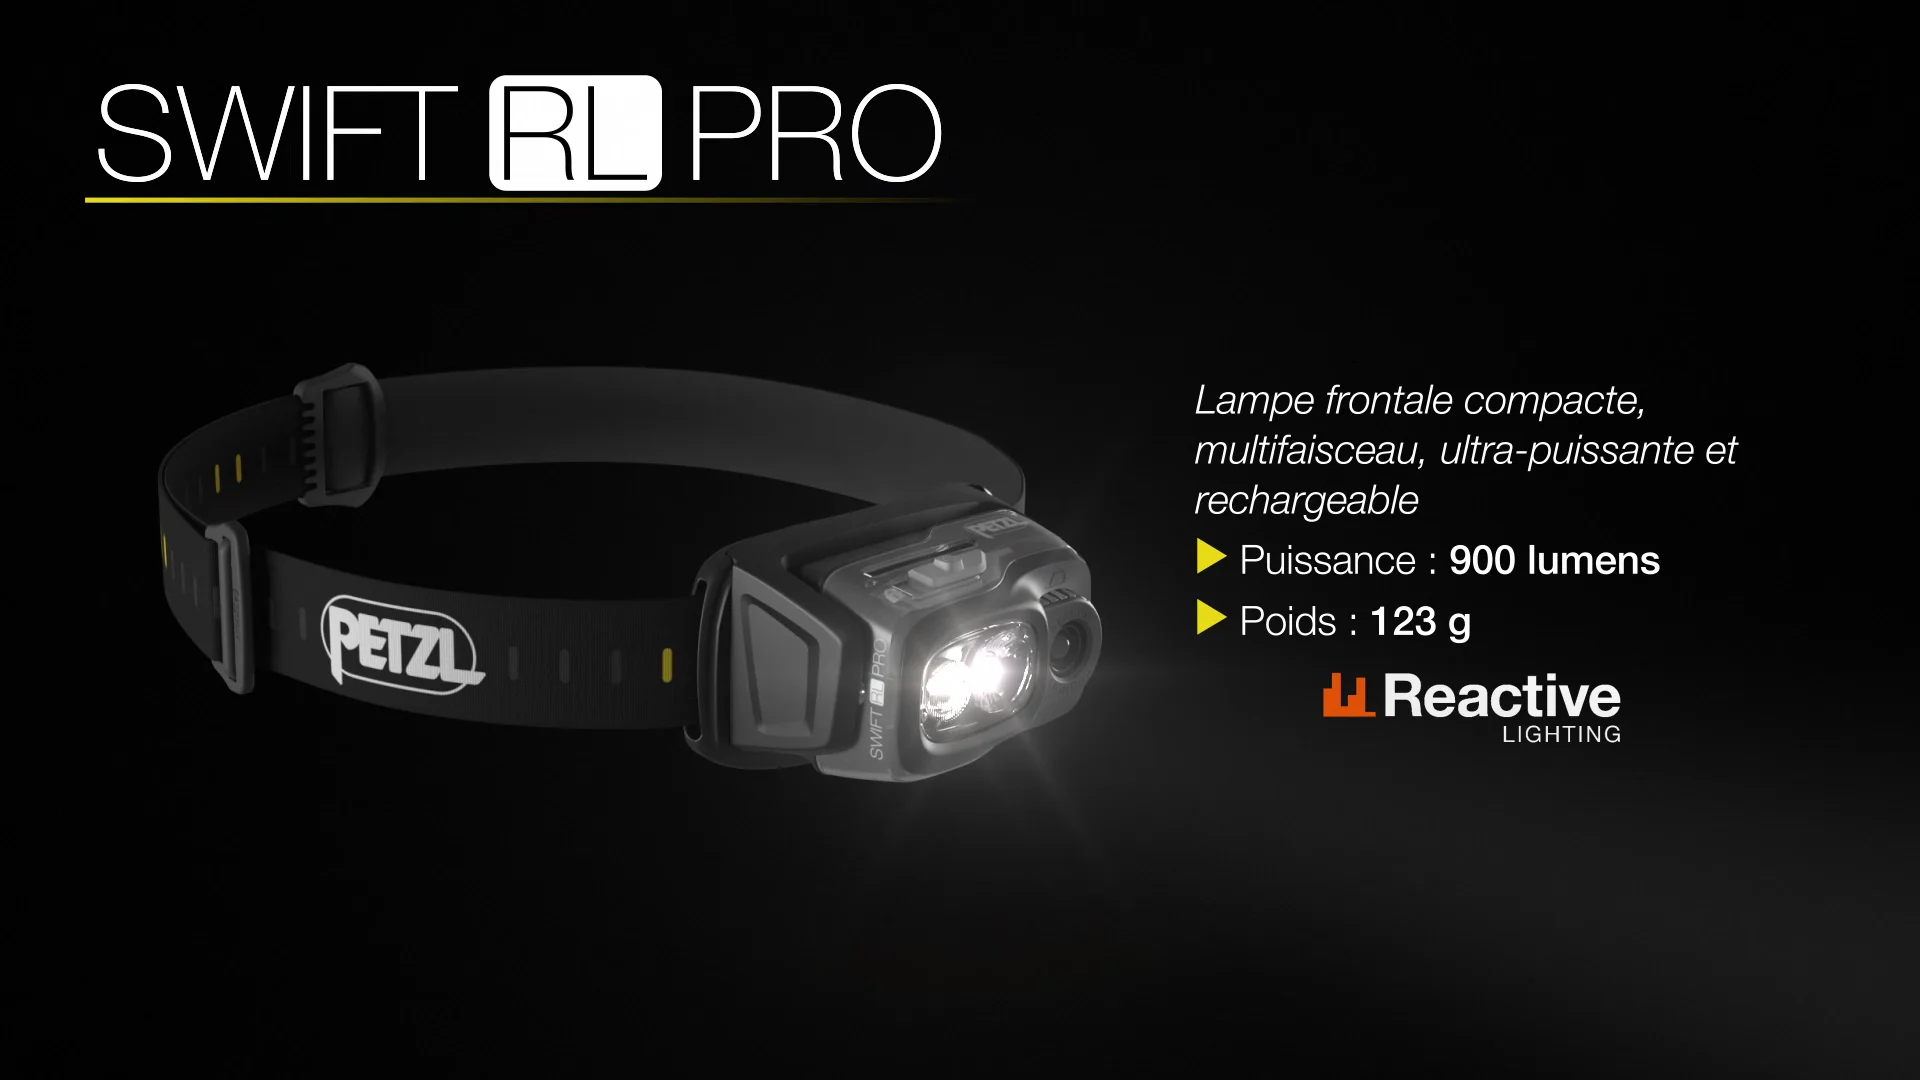 SWIFT RL PRO - Lampe frontale ultra-puissante, légère et rechargeable avec  multifaisceau on Vimeo